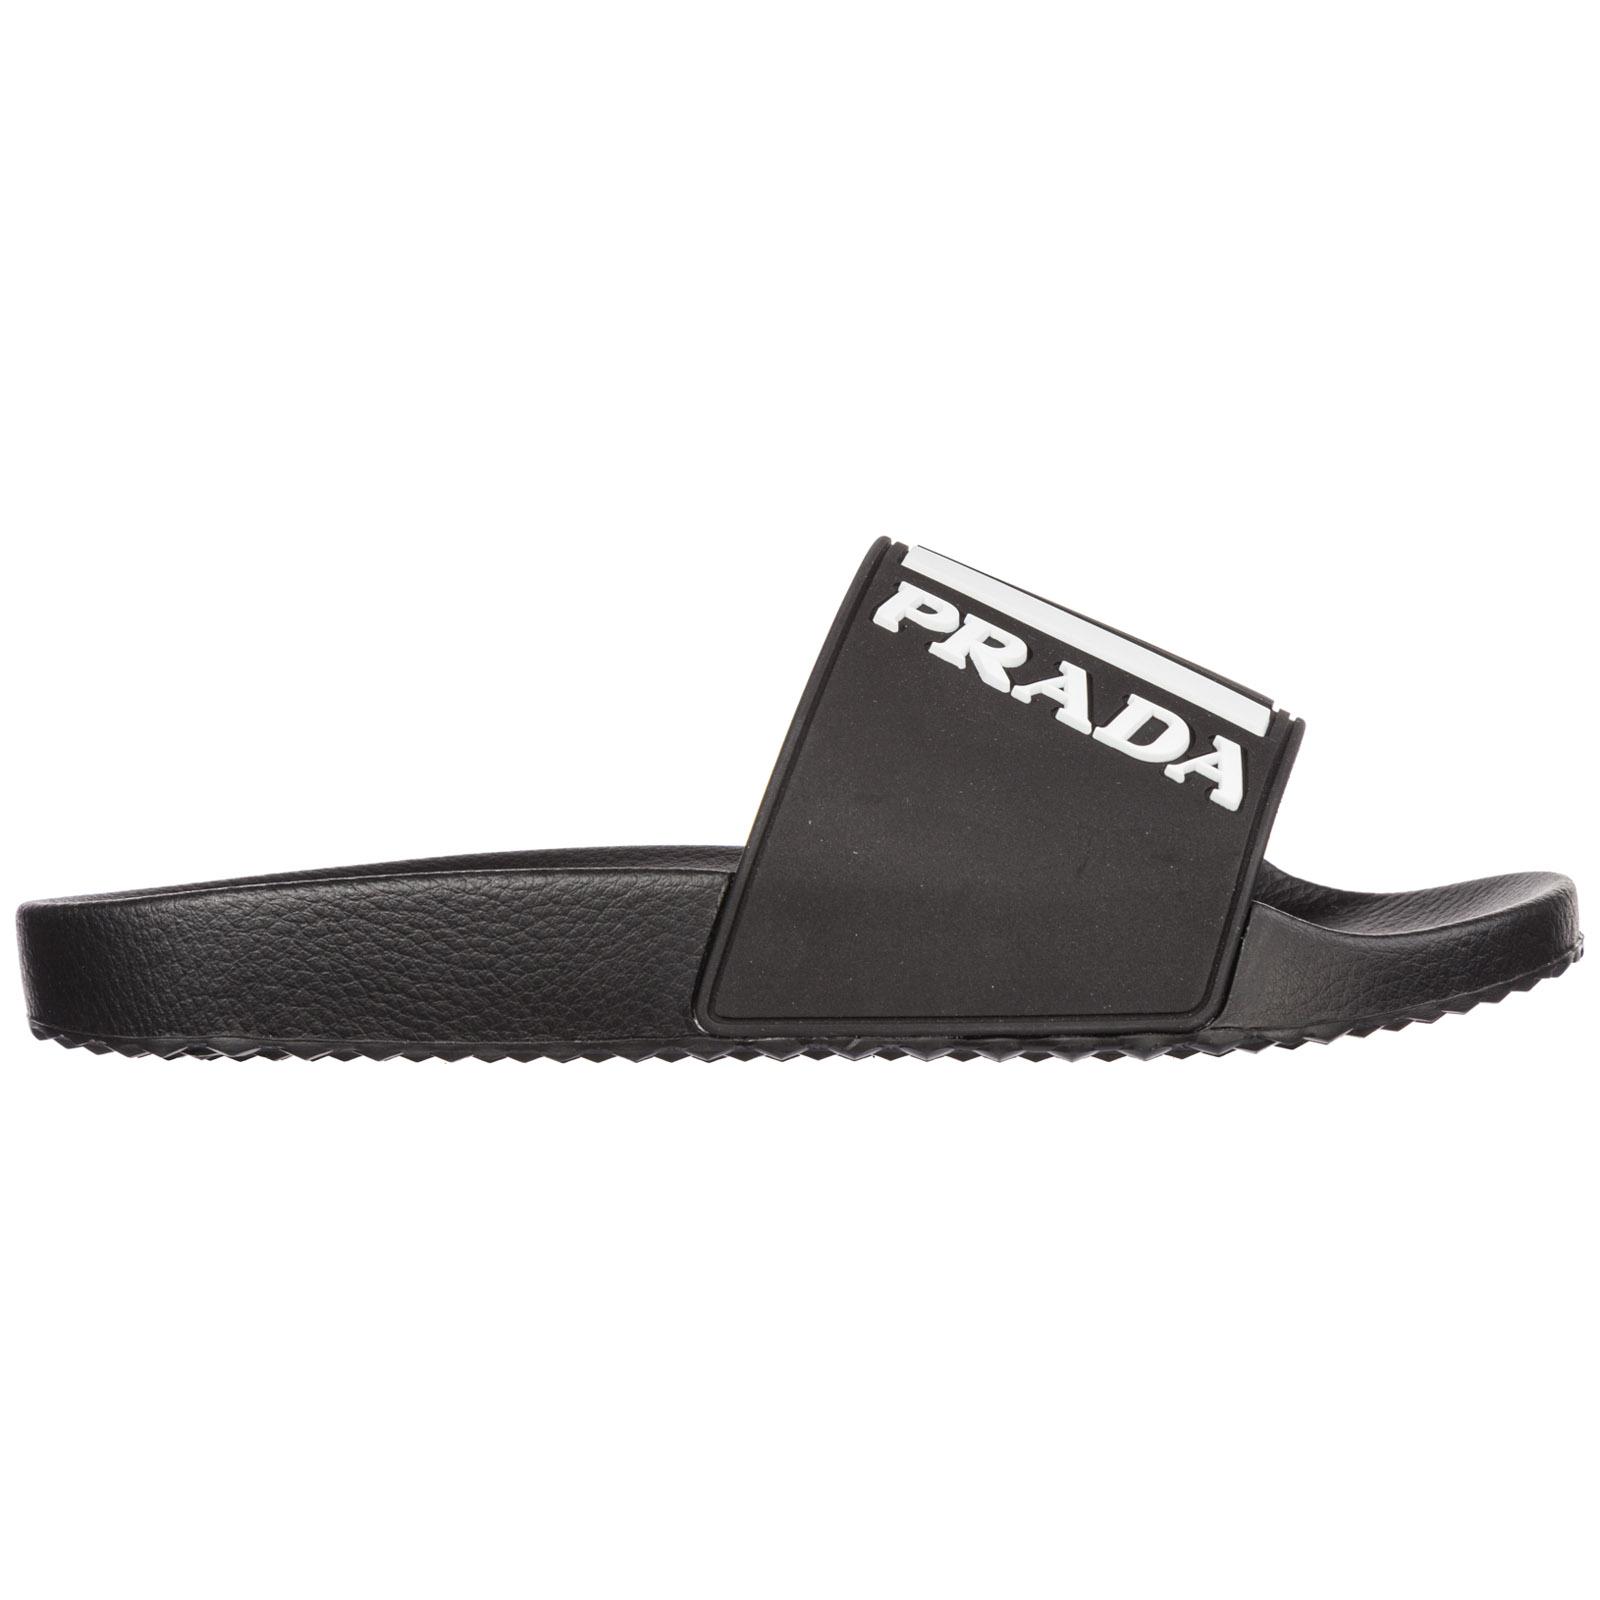 Prada Slippers Sandals Rubber in Black for Men - Lyst